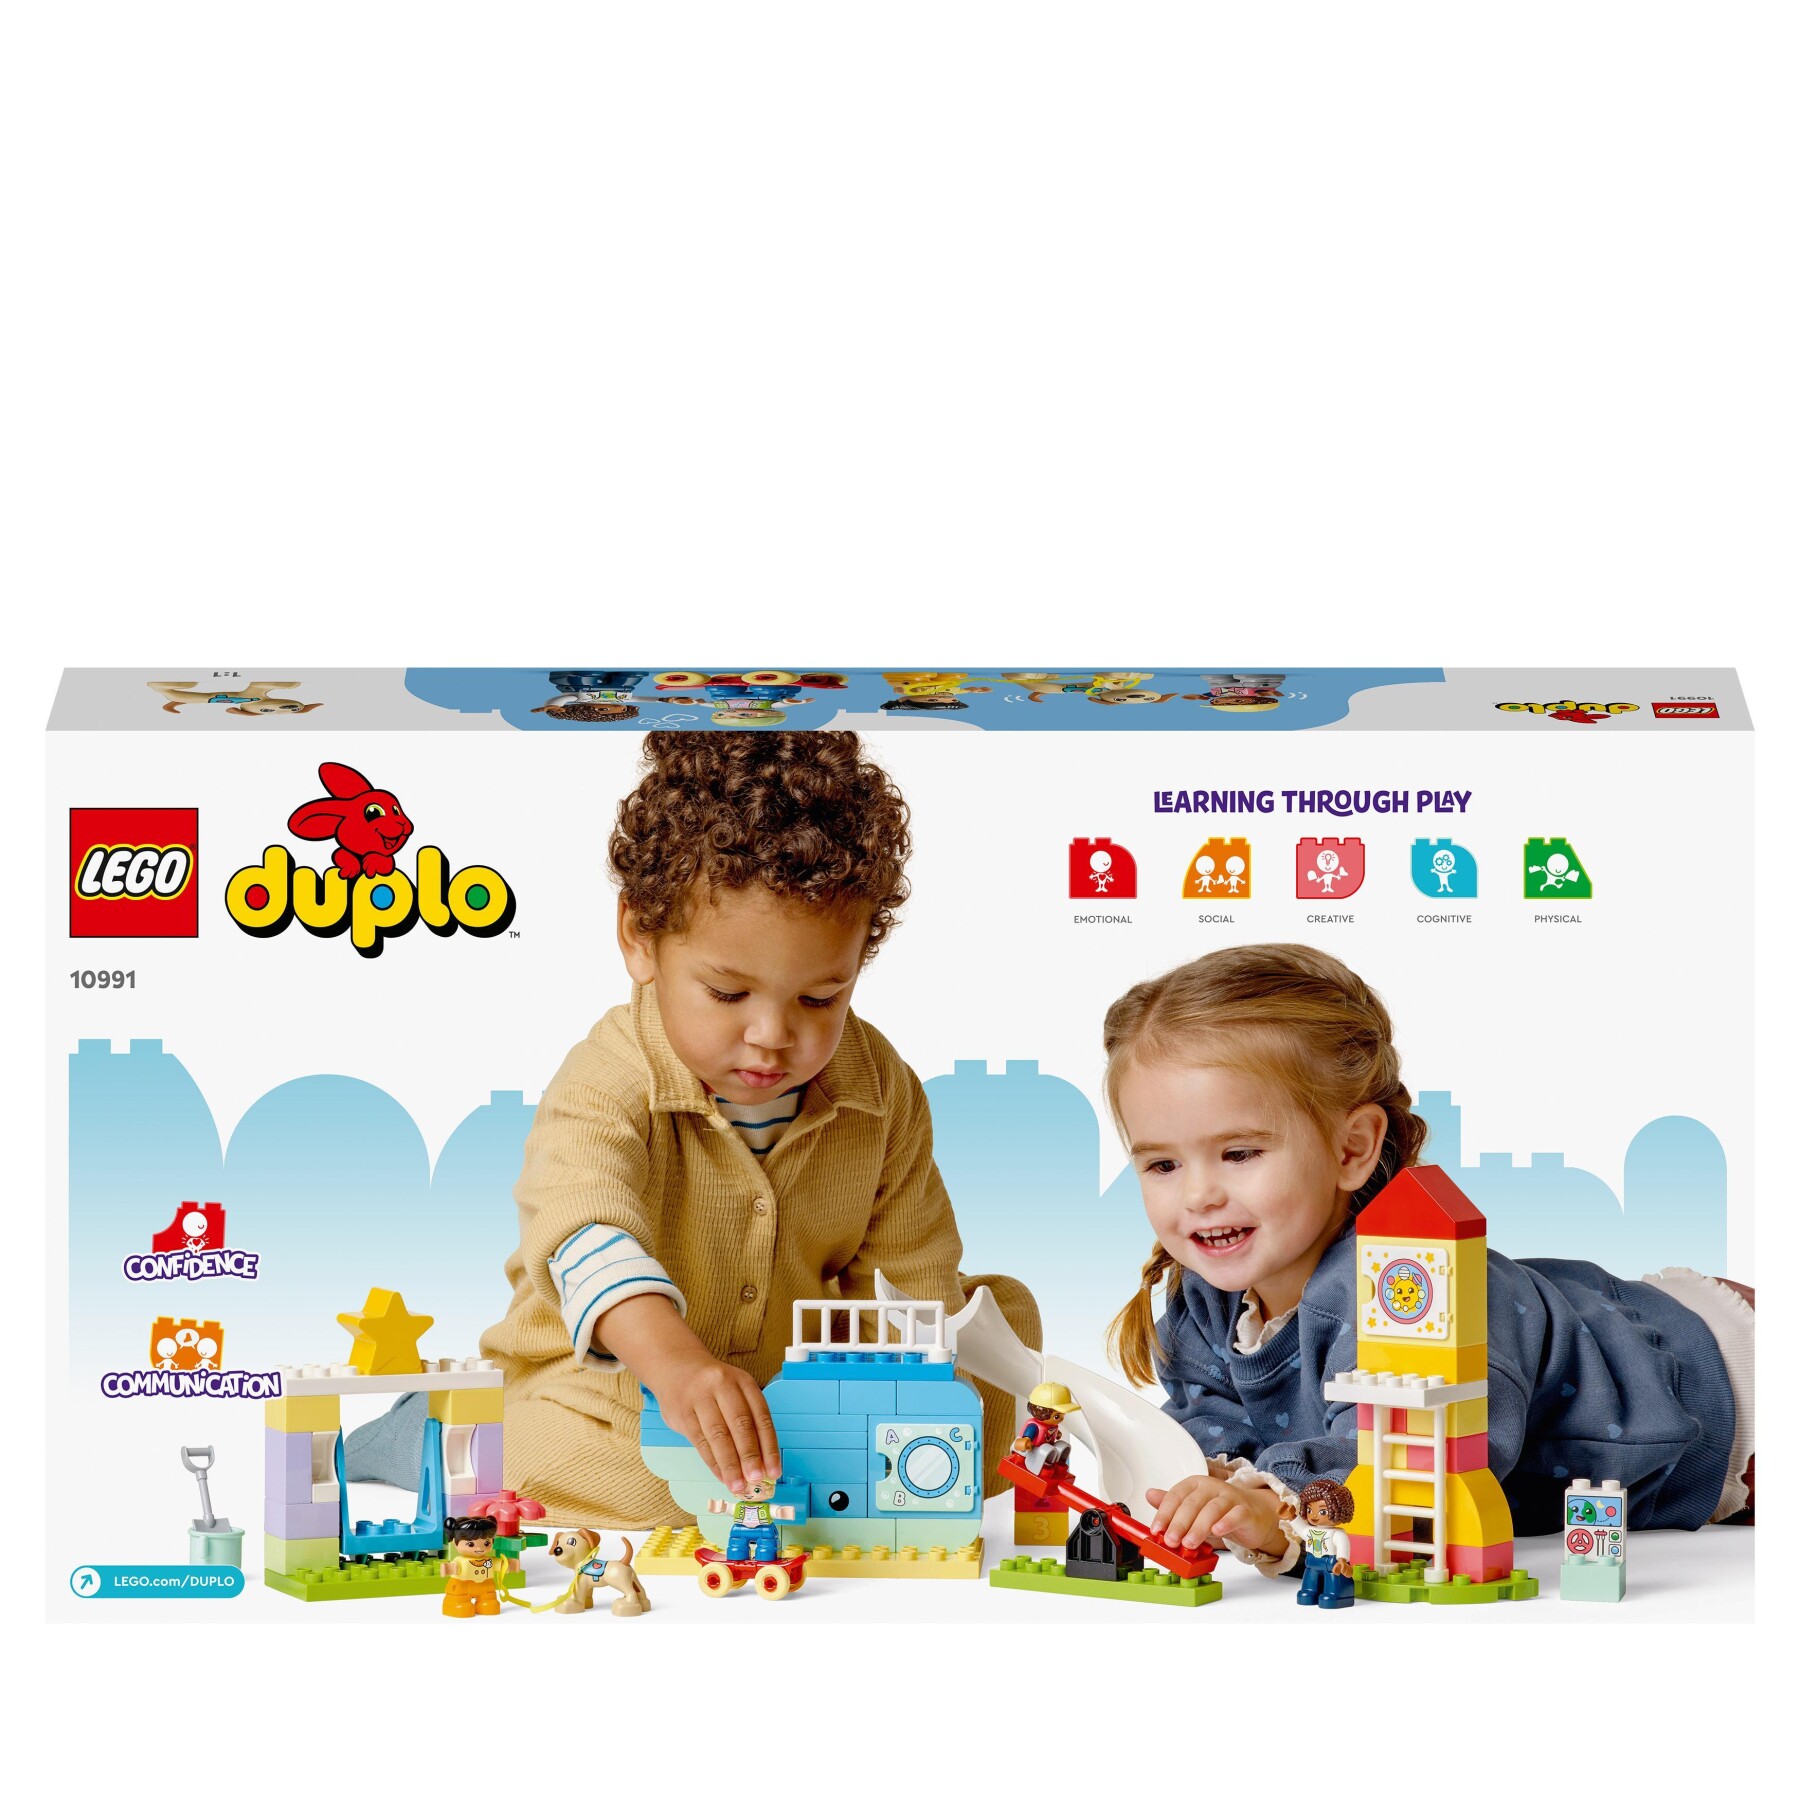 Lego duplo 10991 il parco giochi dei sogni, giochi per bambini 2+ anni con balena e razzo da costruire con i mattoncini - LEGO DUPLO